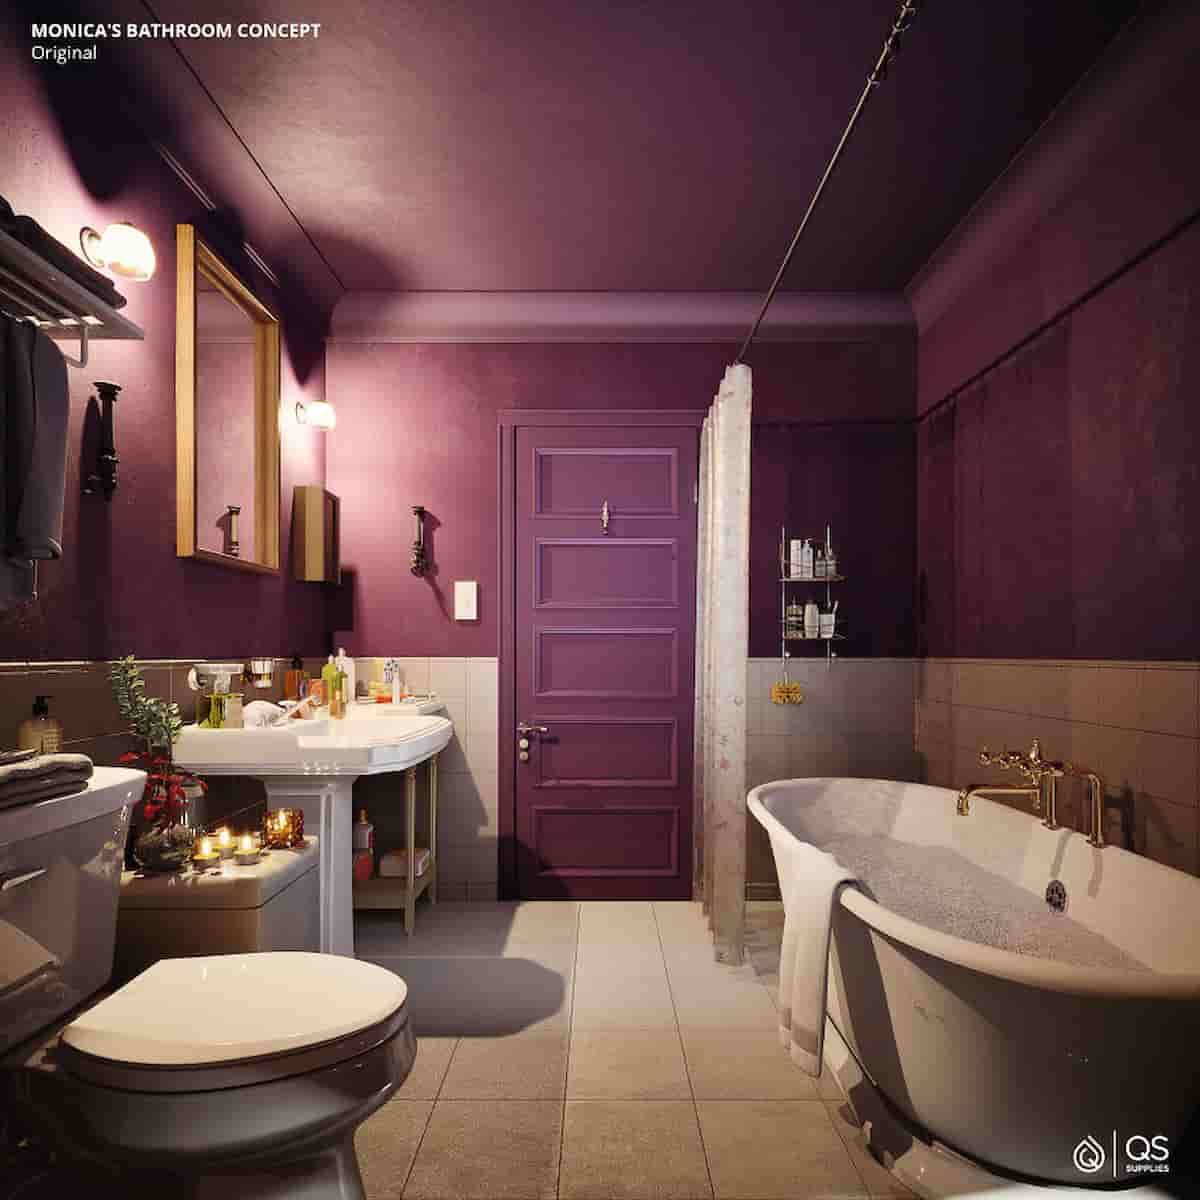 Estúdio QS Supplies recria banheiro de Monica Geller, de Friends em 6 diferentes estilos. Fotos: Divulgação/QS Supplies